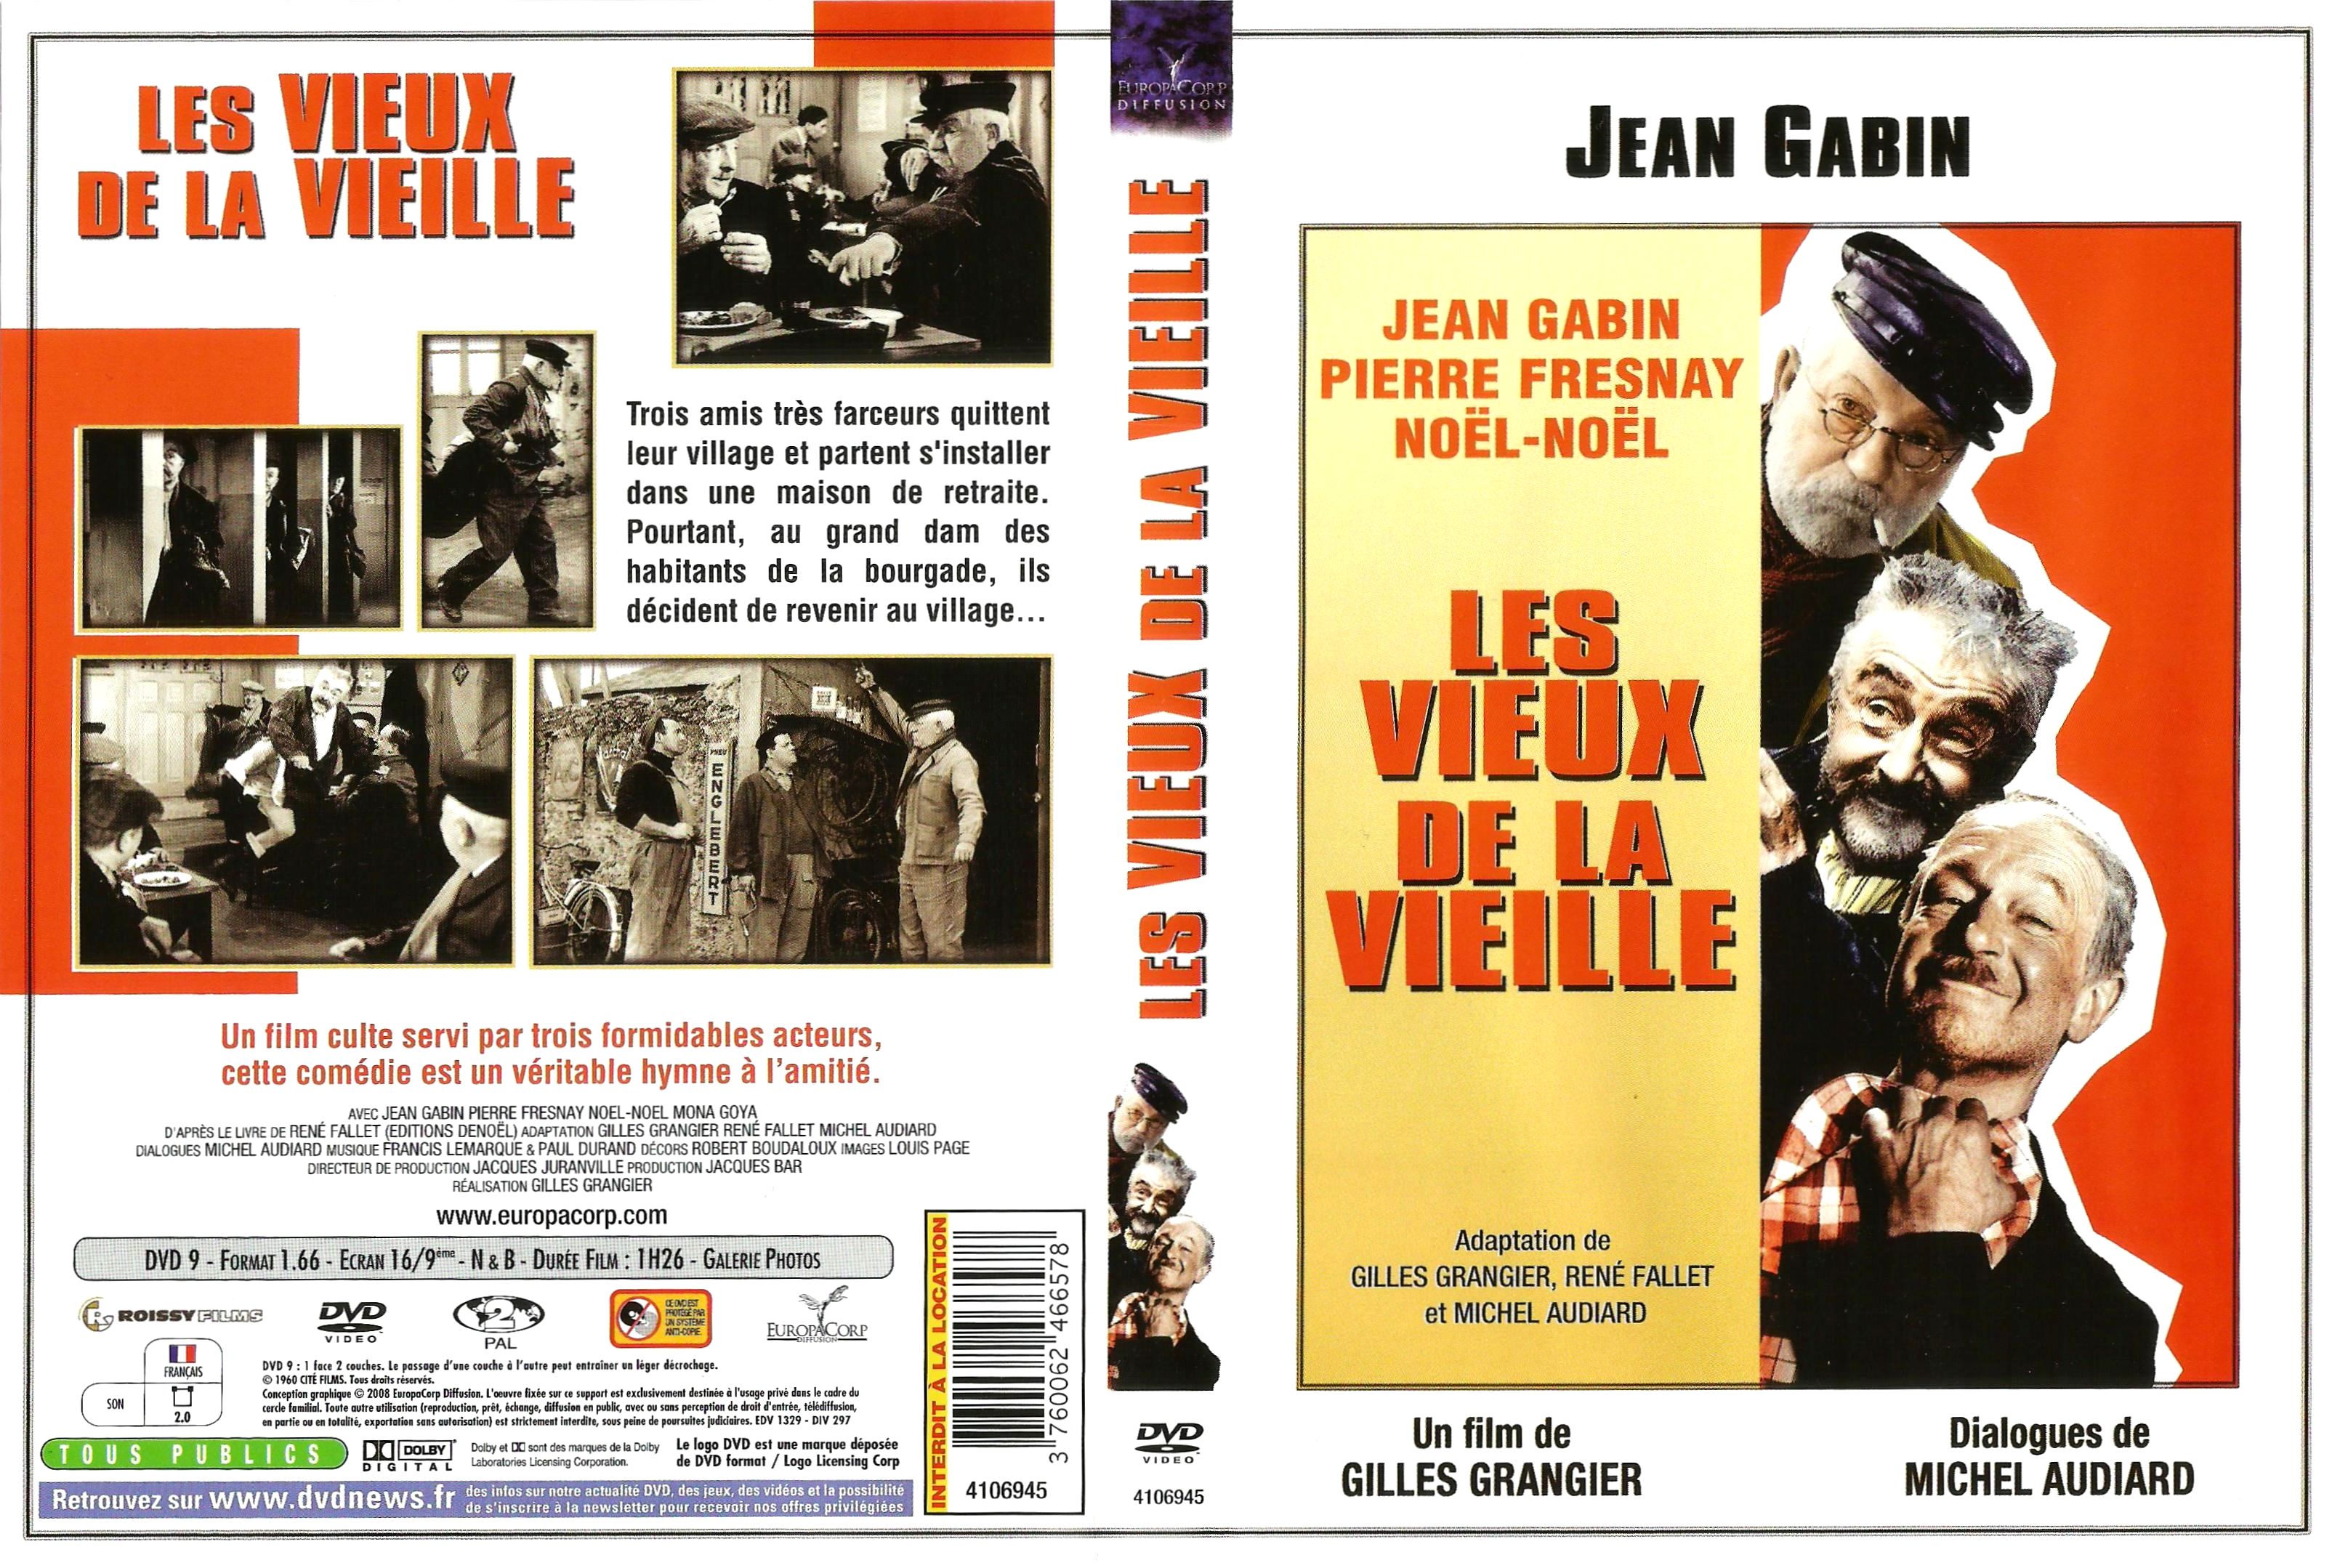 Jaquette DVD Les vieux de la vieille v4